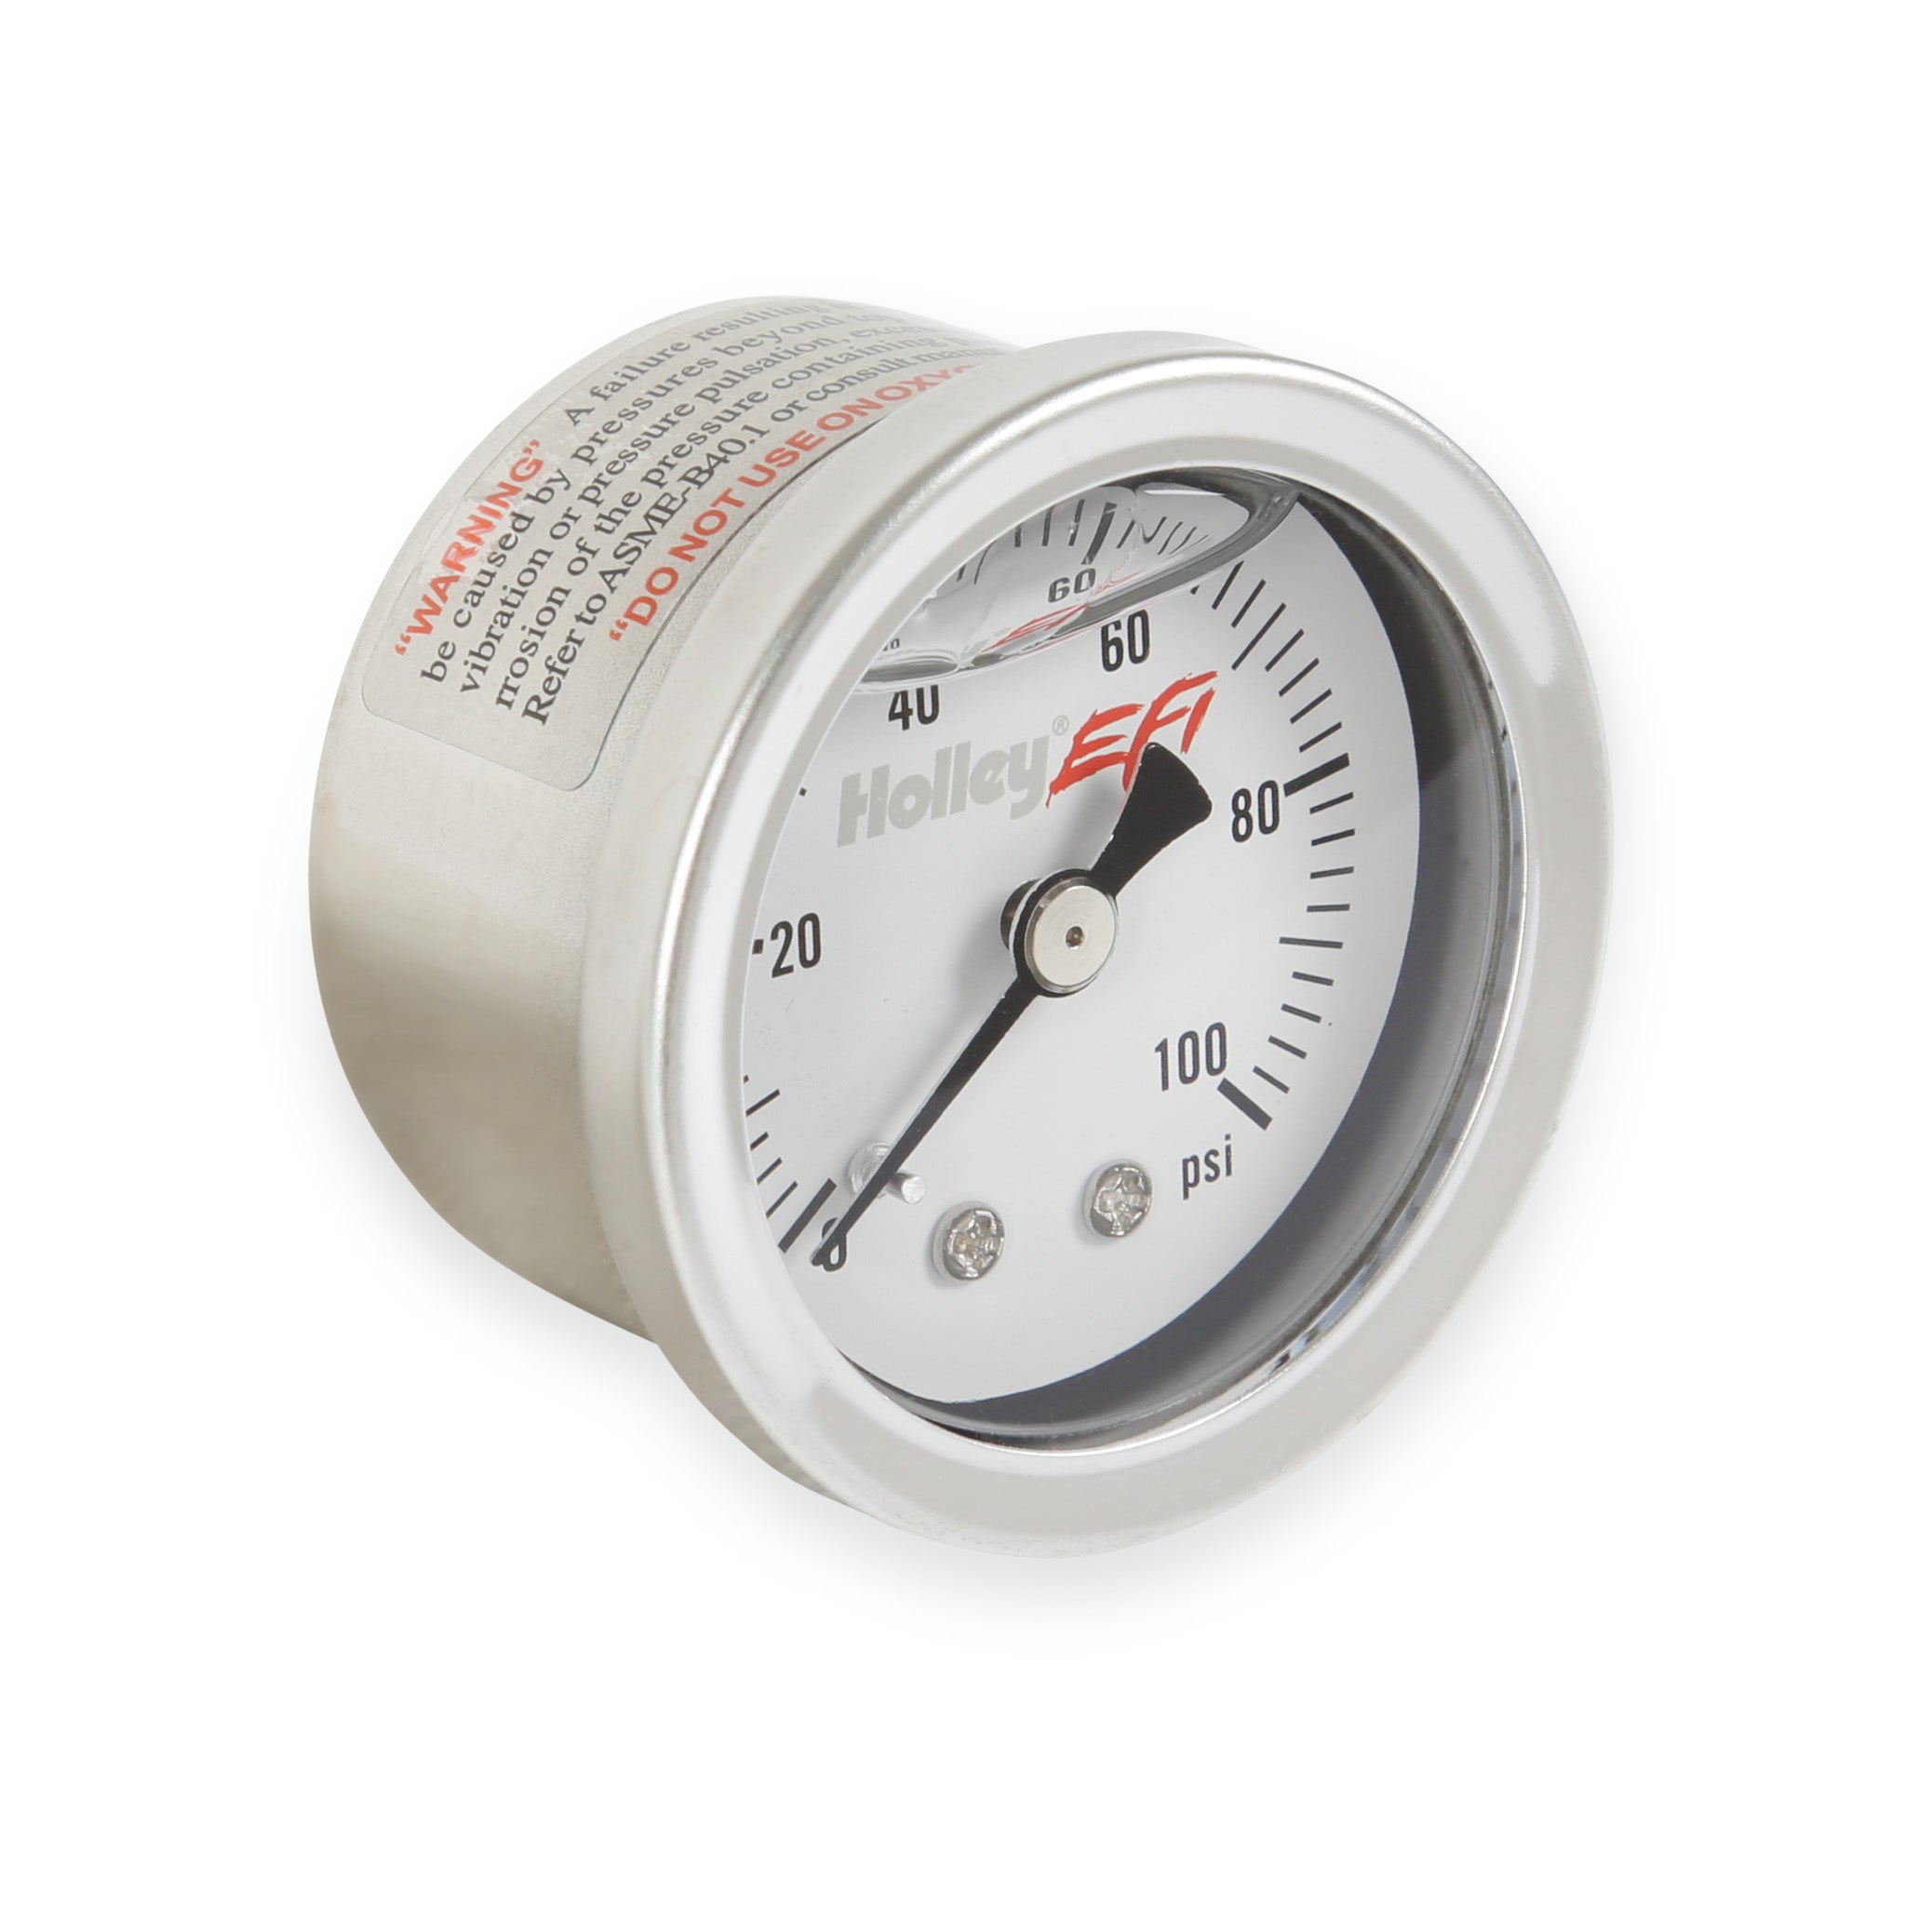 Holley EFI Fuel Pressure Gauge 26-507